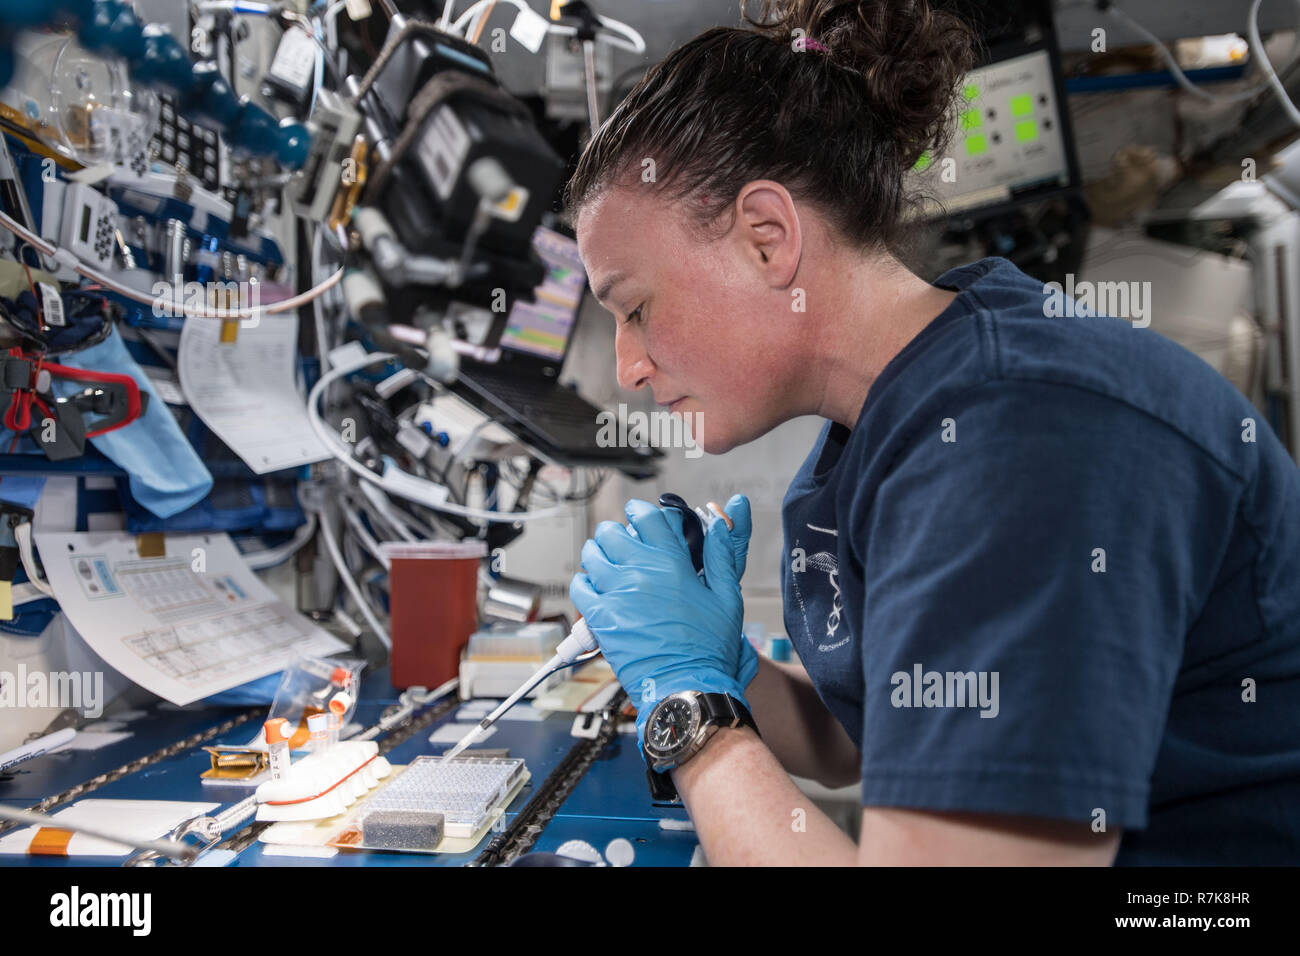 Amerikanische astronaut Serena Aunon-Chancellor arbeitet in das japanische Labor Kibo Modul mischen Protein crystal Proben zu Wissenschaftlern helfen zu verstehen, wie sie an Bord der Internationalen Raumstation am 9. November 2018 in der Erdumlaufbahn. Stockfoto